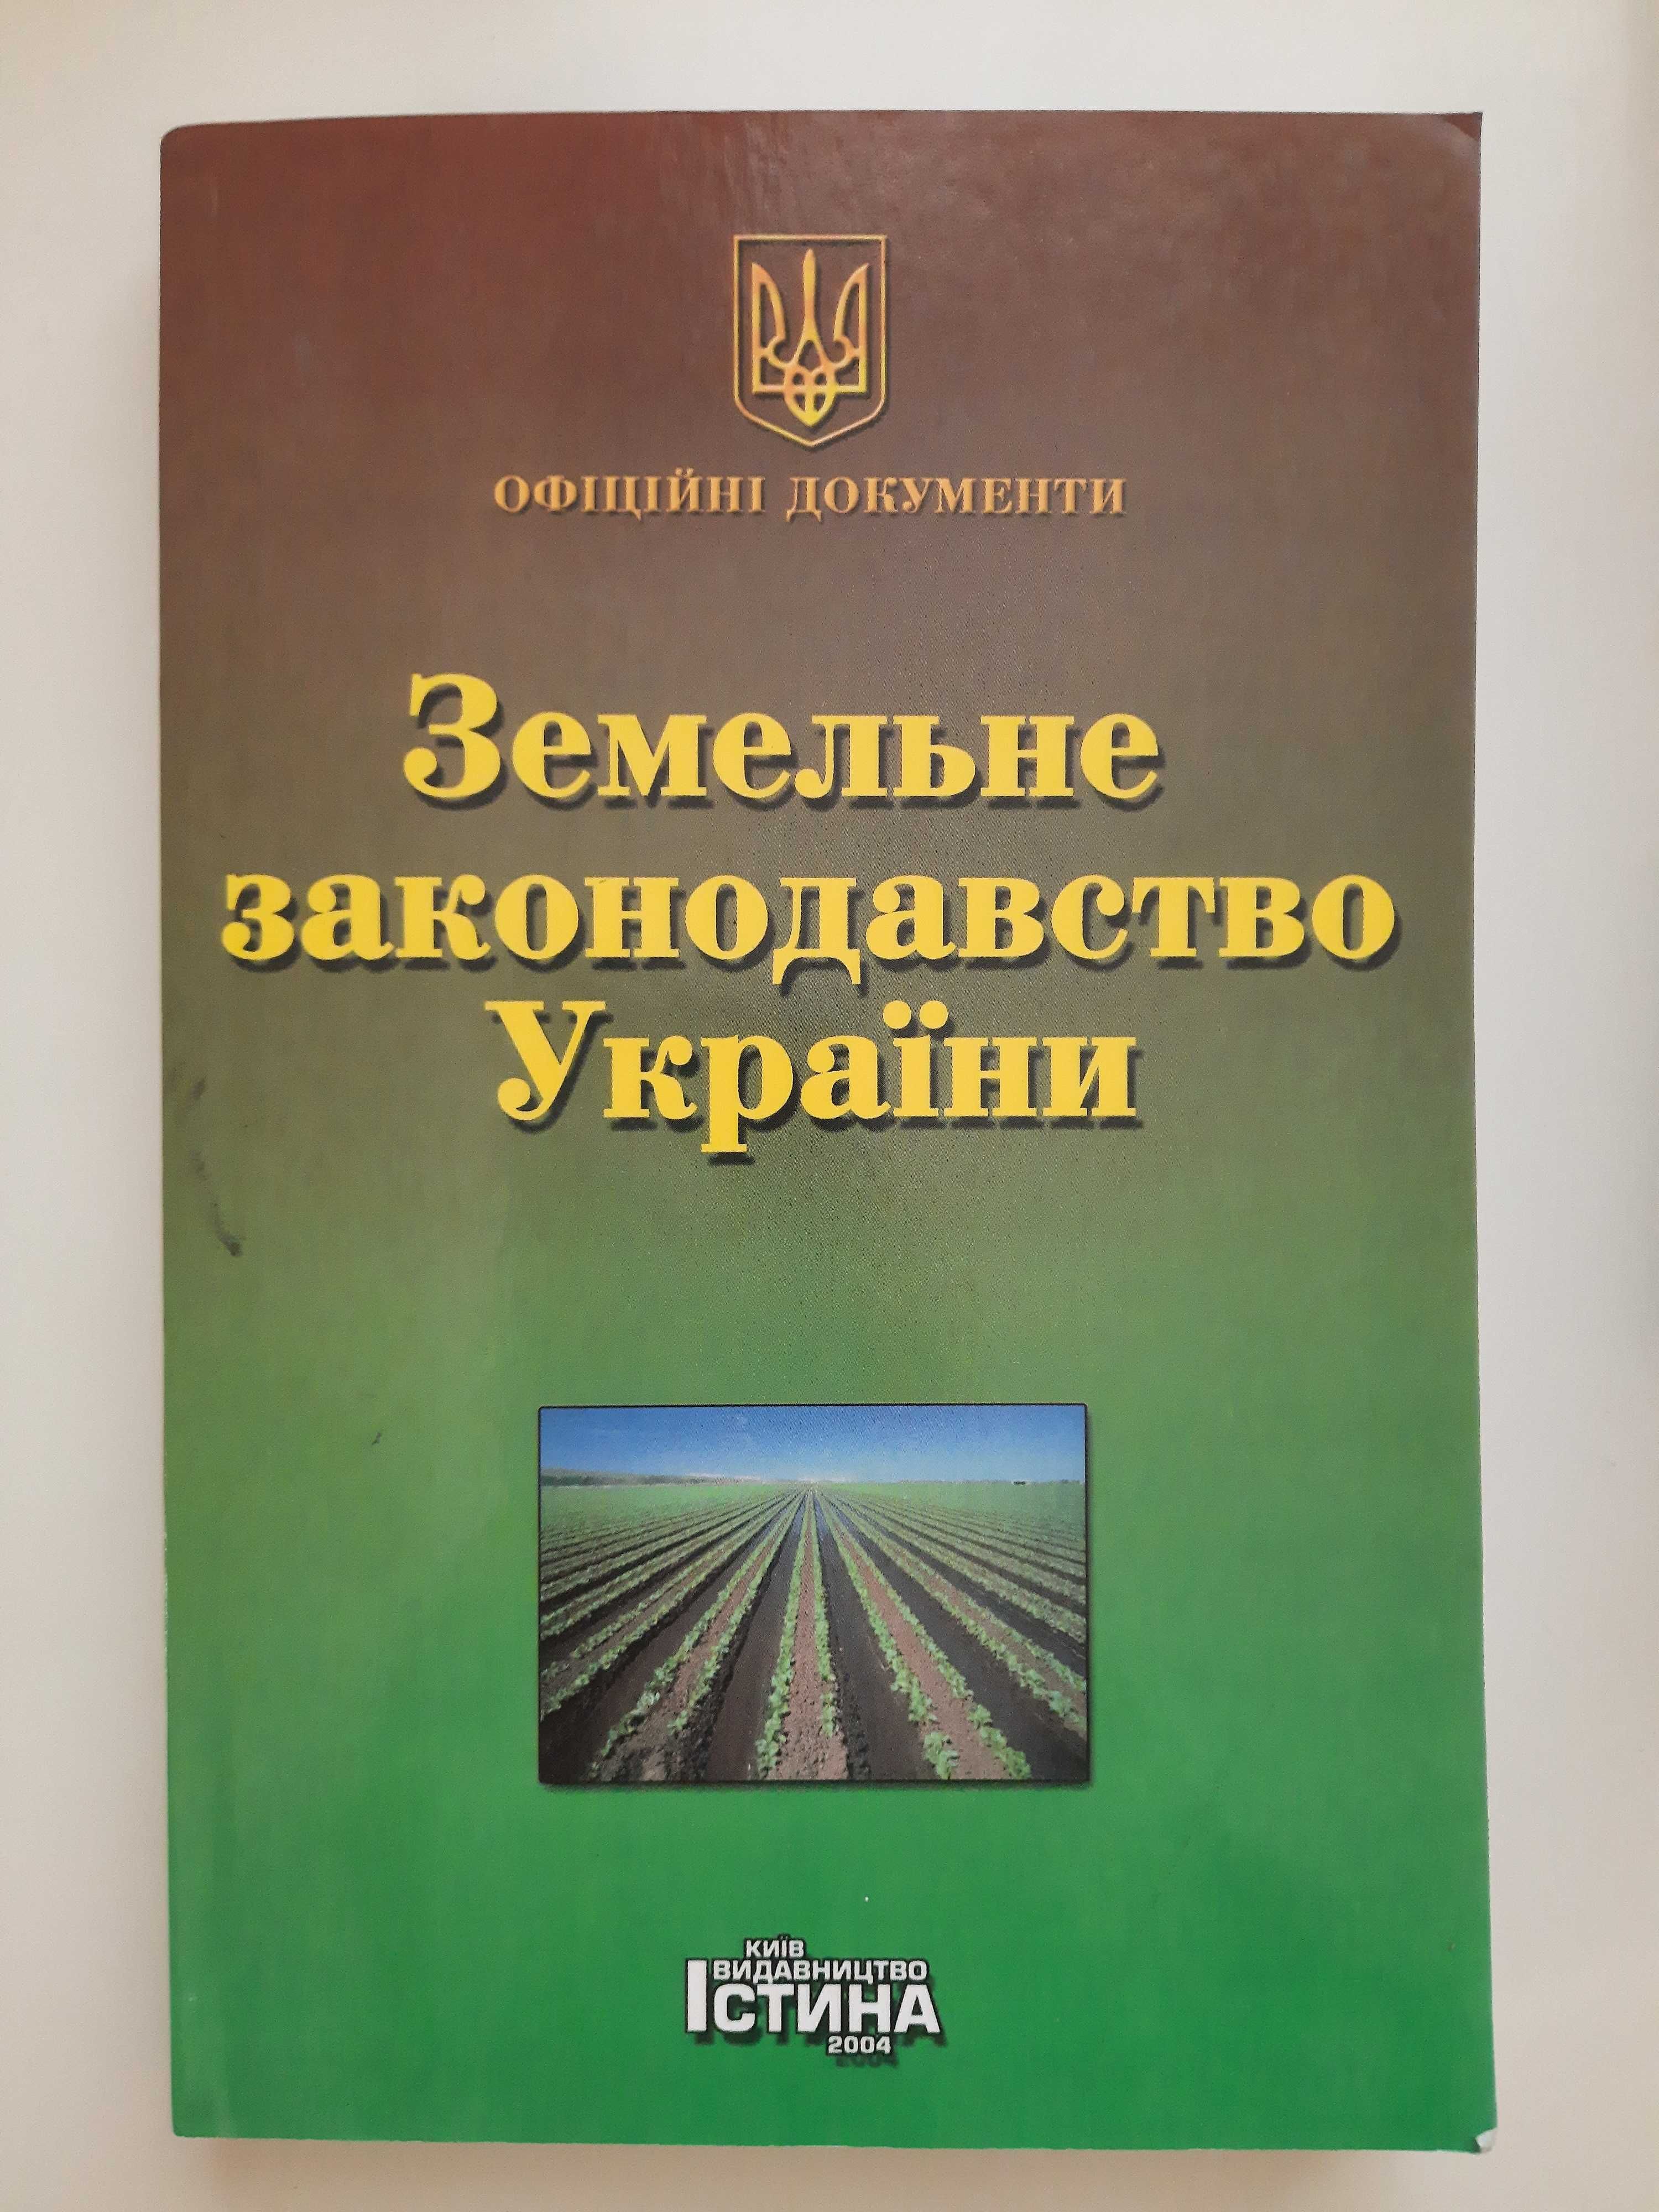 Земельный кодекс, земельное законодательство Украины